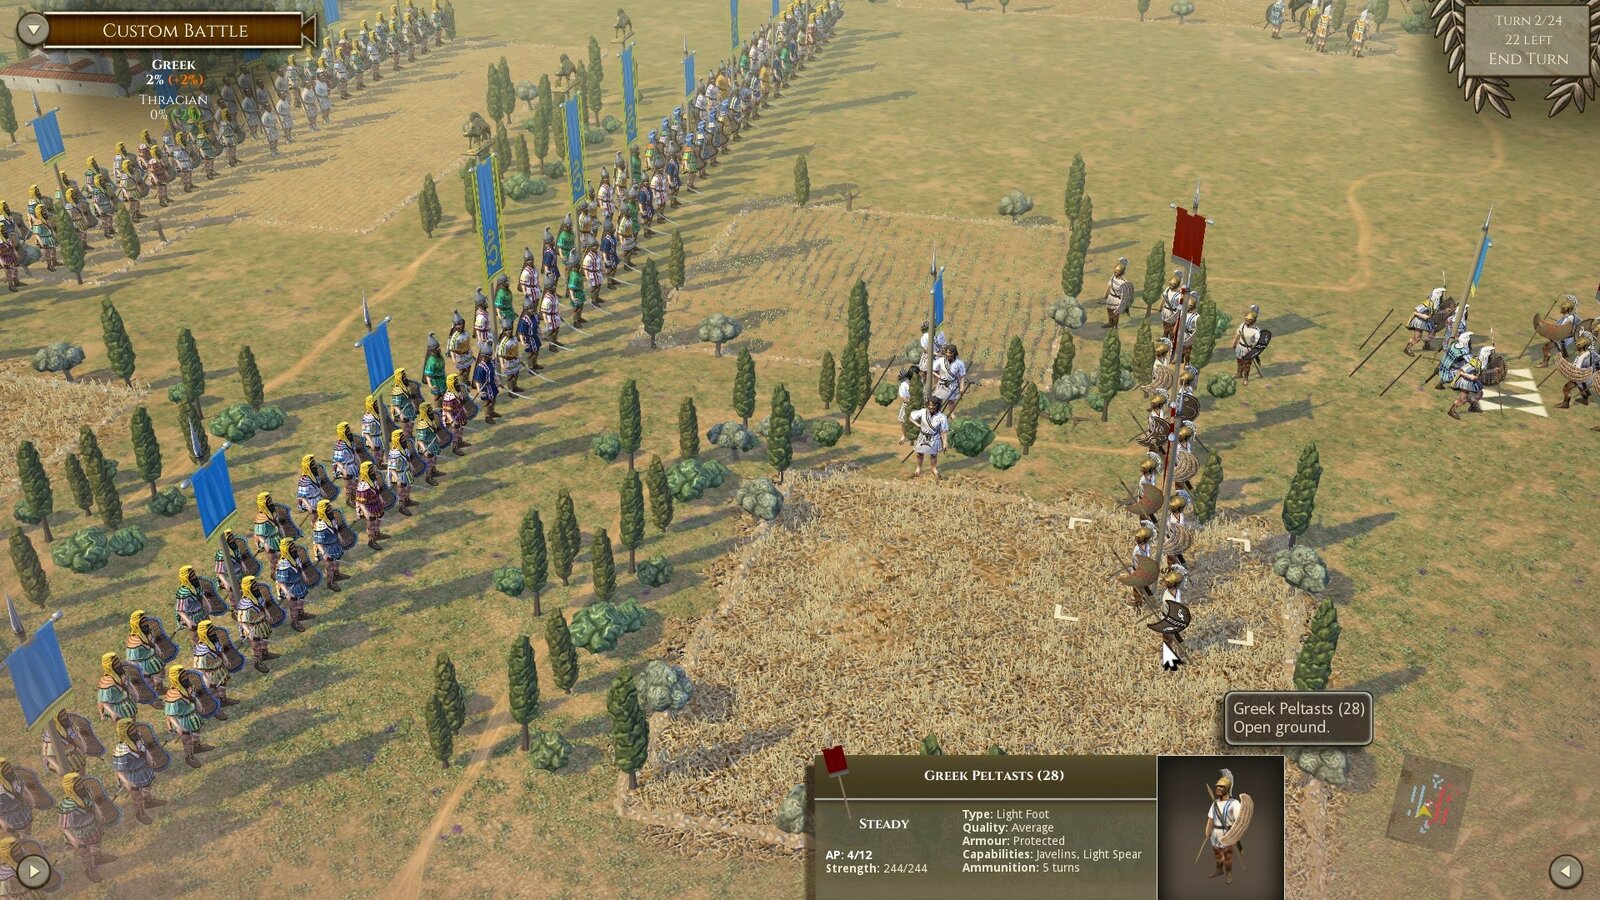 Field of Glory II - Rise of Persia